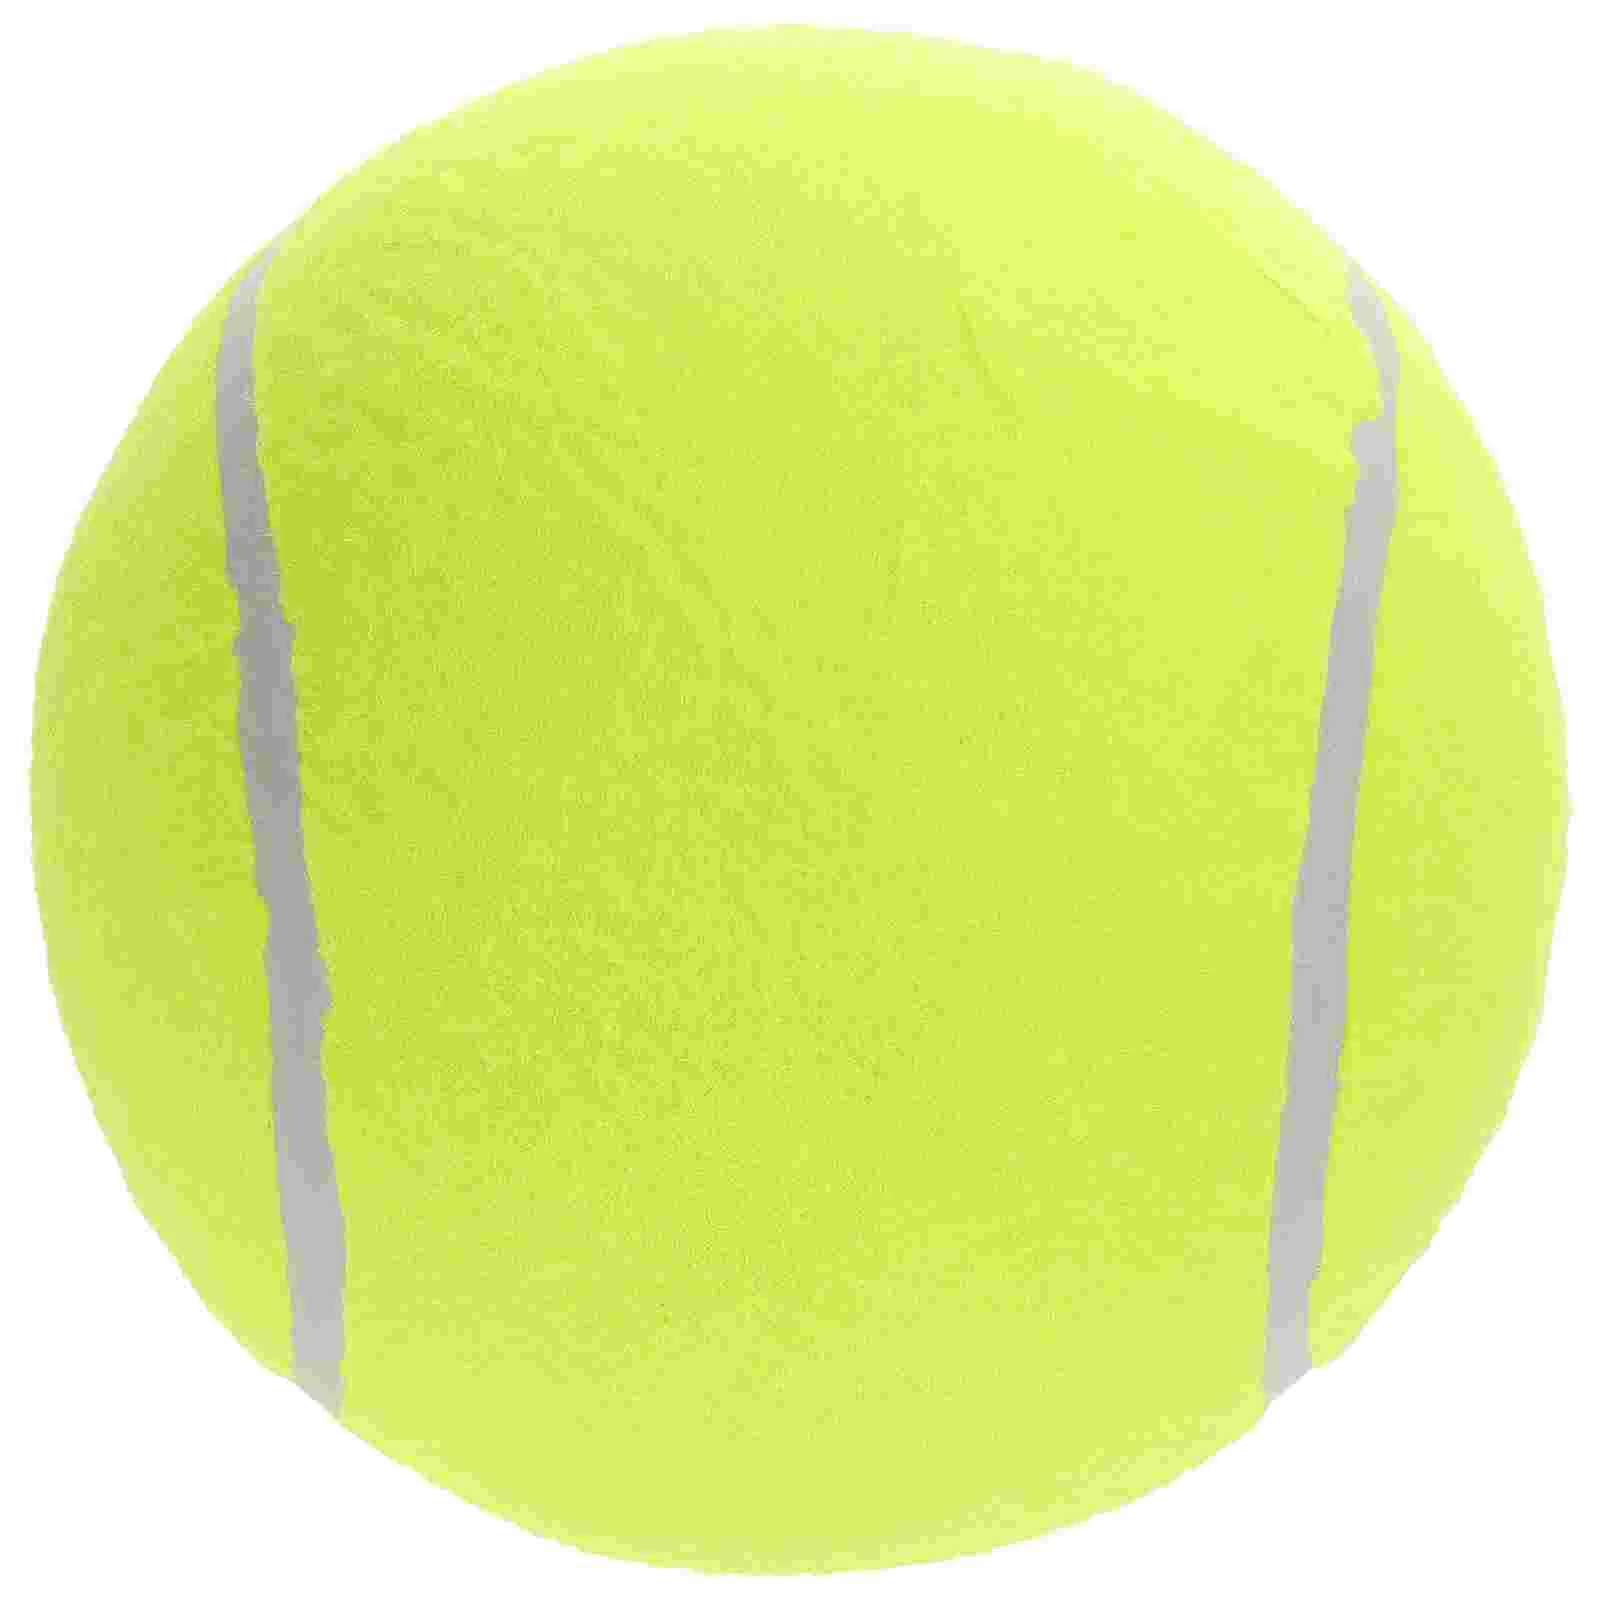 

1 шт. 20 см надувной фланелевый мяч, большой мяч для тенниса с надписью, резиновый мяч для детей, мячи для спорта на открытом воздухе (желтый)